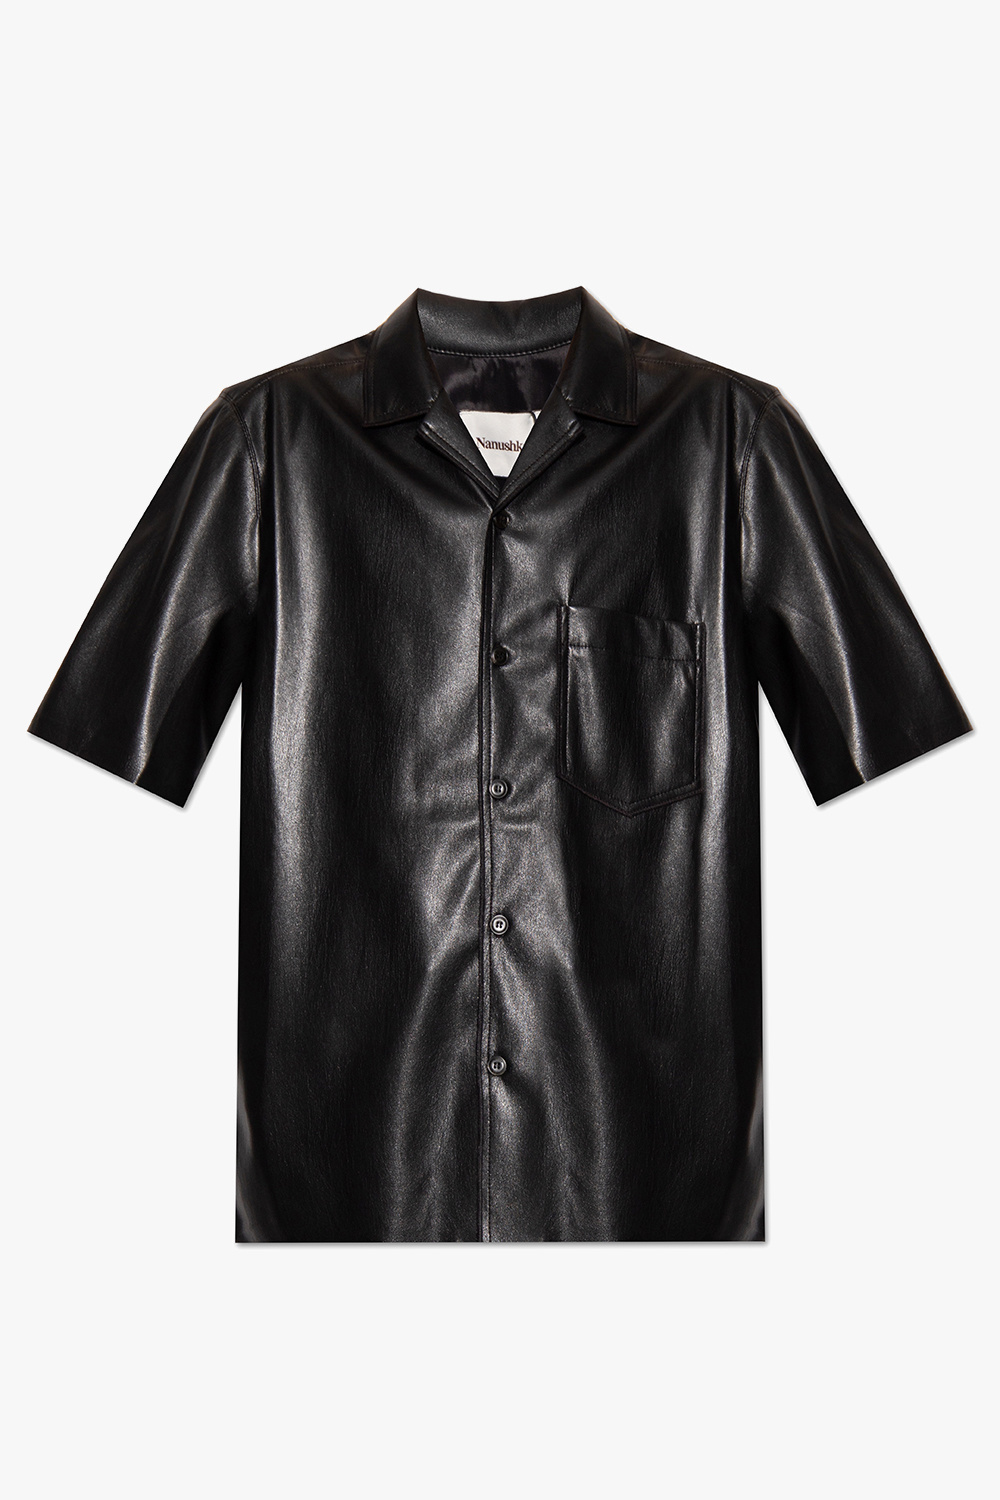 Nanushka ‘Bodil’ shirt in vegan leather